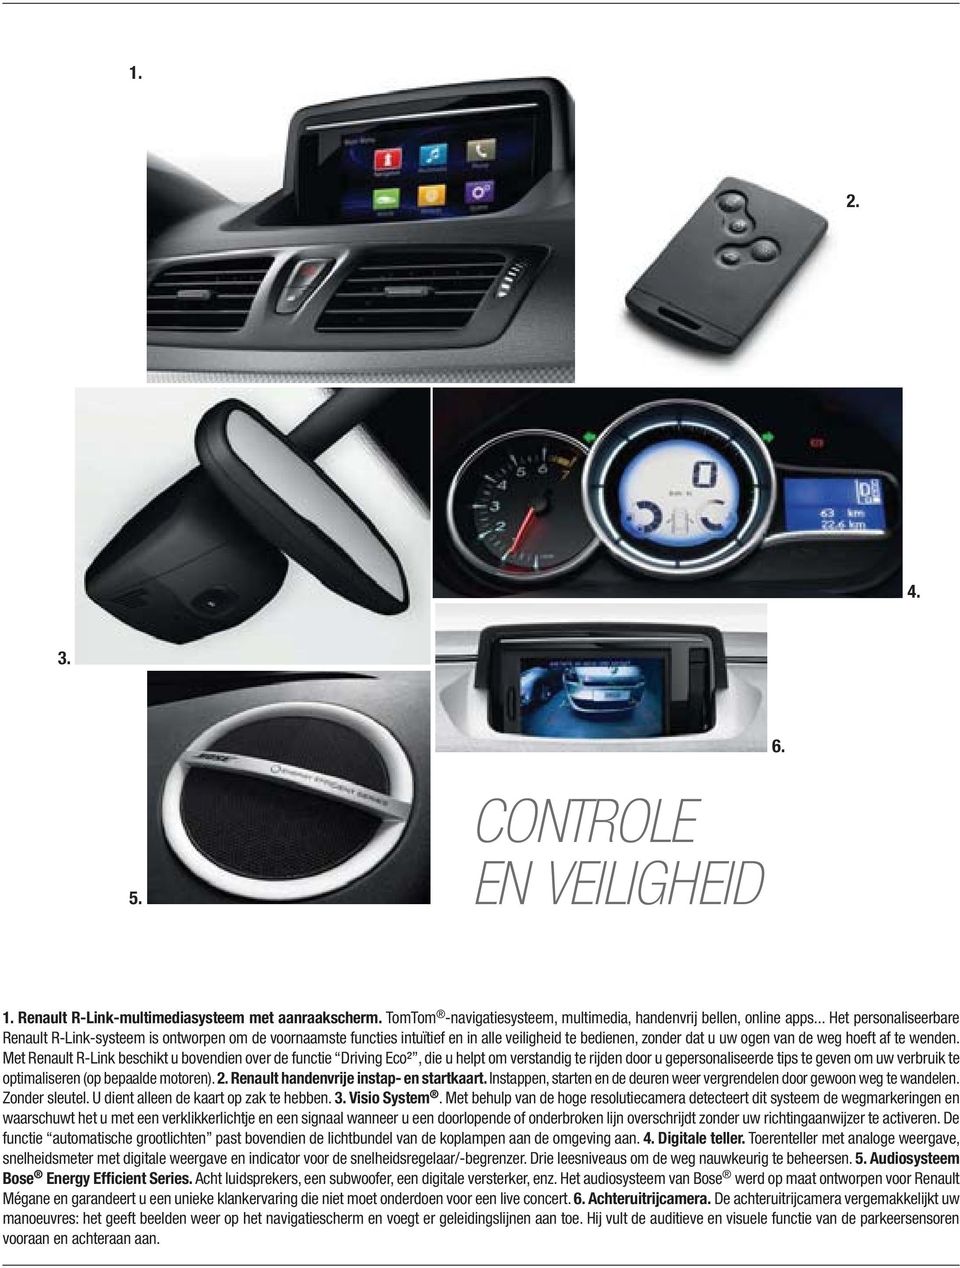 Met Renault R-Link beschikt u bovendien over de functie Driving Eco², die u helpt om verstandig te rijden door u gepersonaliseerde tips te geven om uw verbruik te optimaliseren (op bepaalde motoren).